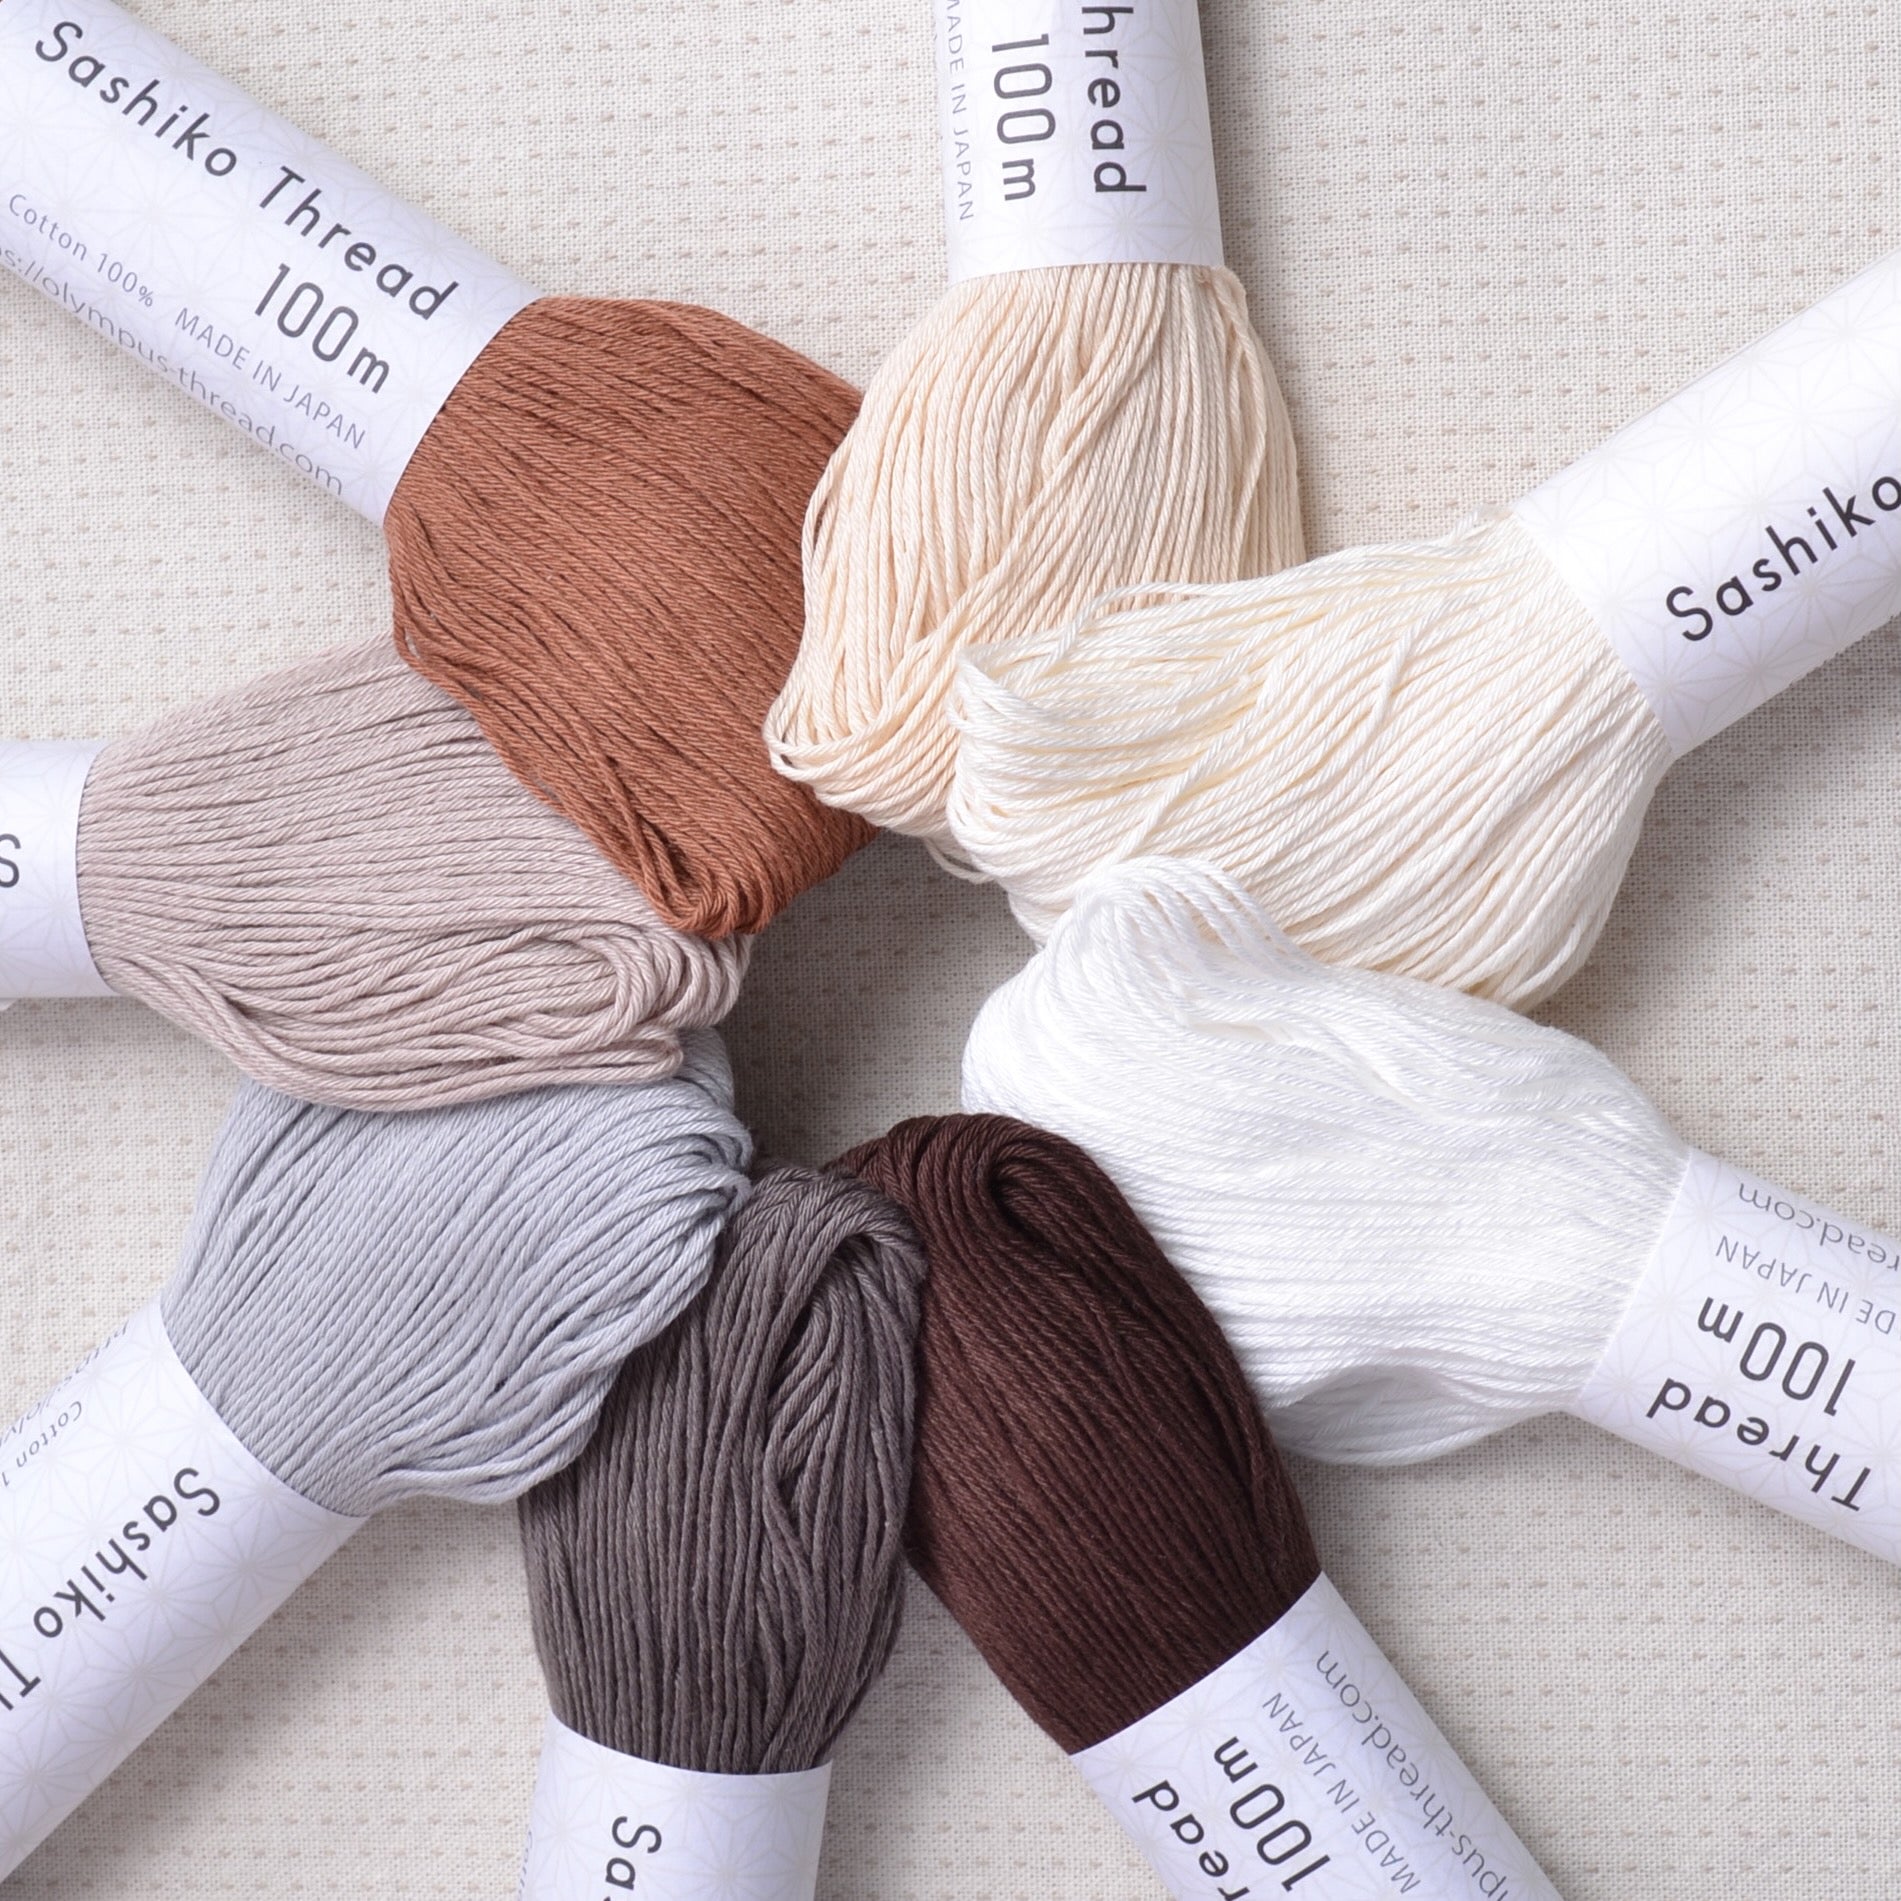 Sashiko threads, taupes, browns, greys